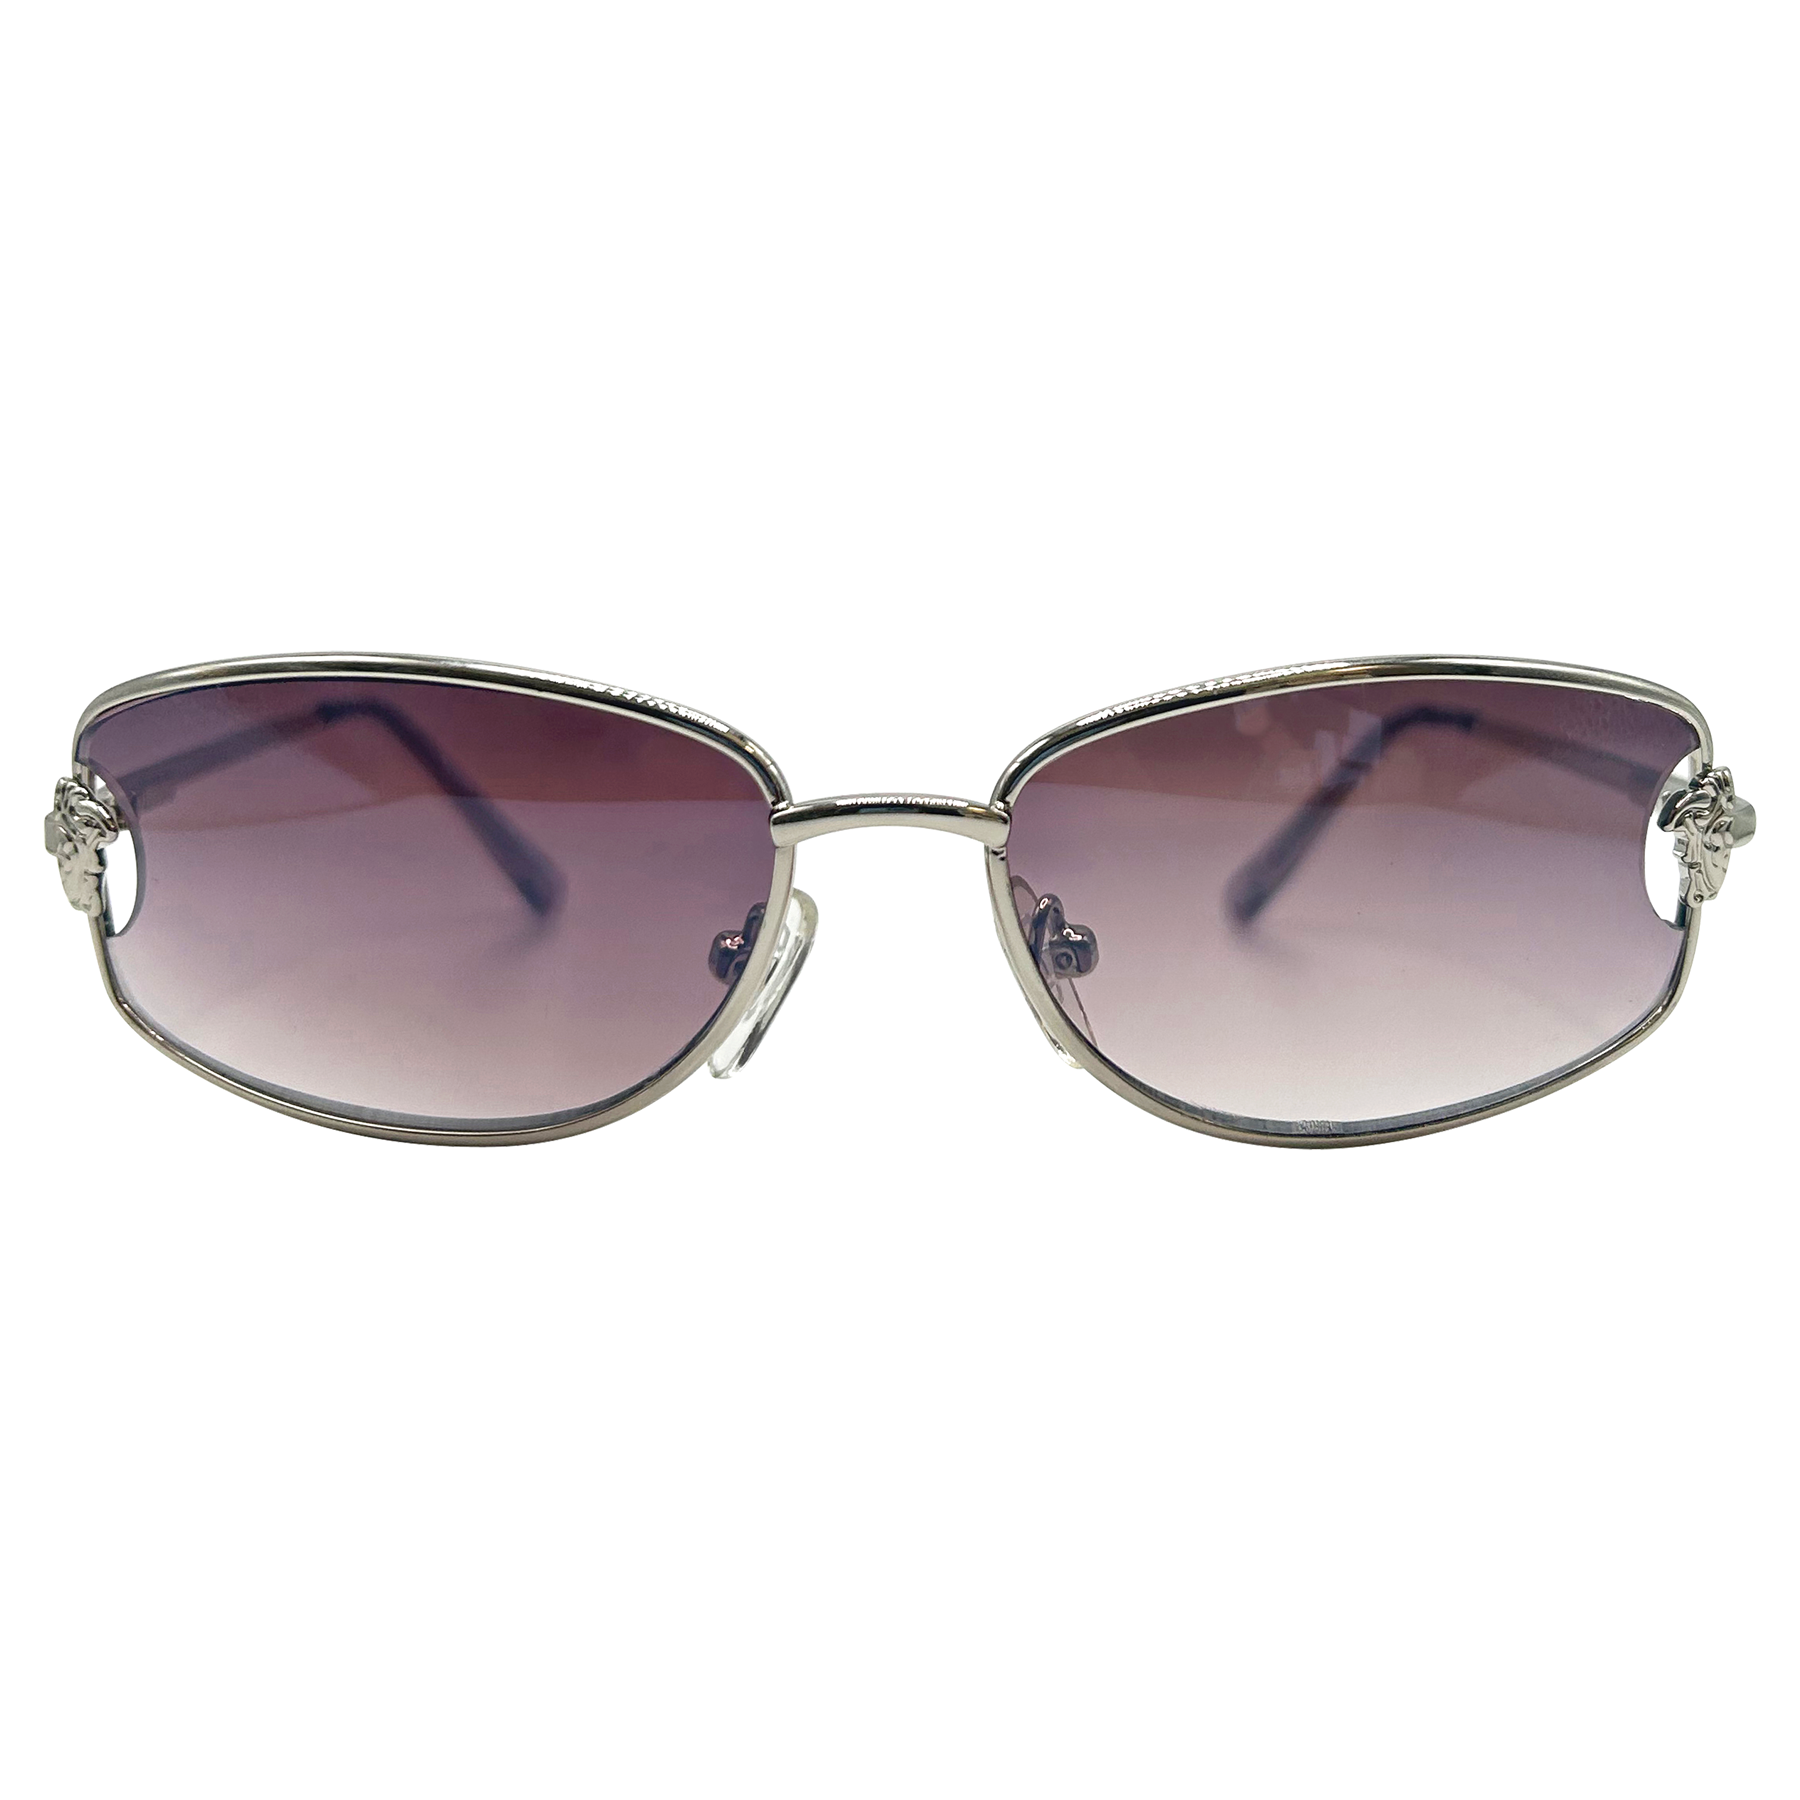 SUGARPLUM Square 90s Sunglasses